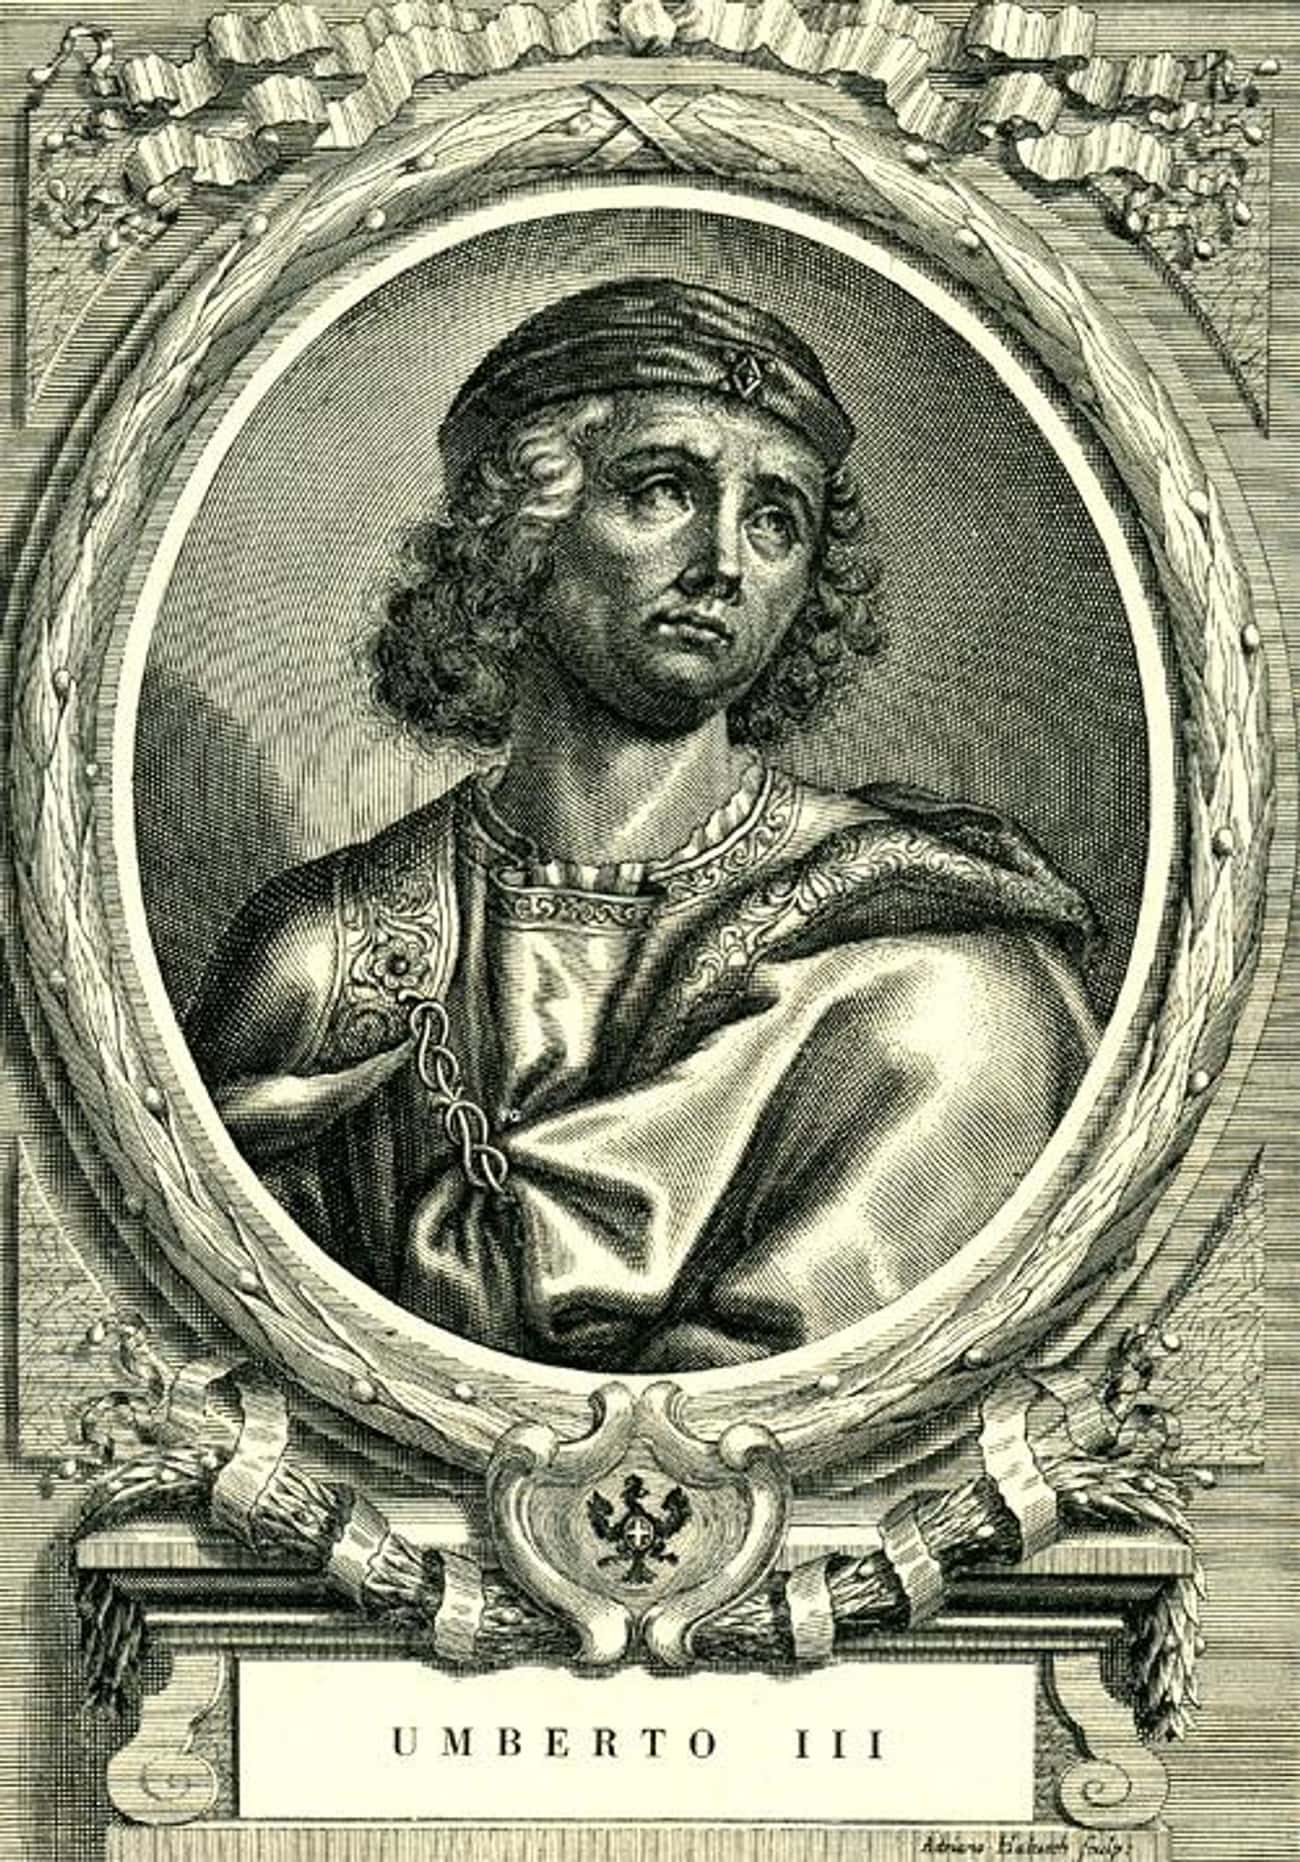 Humbert III, Count of Savoy